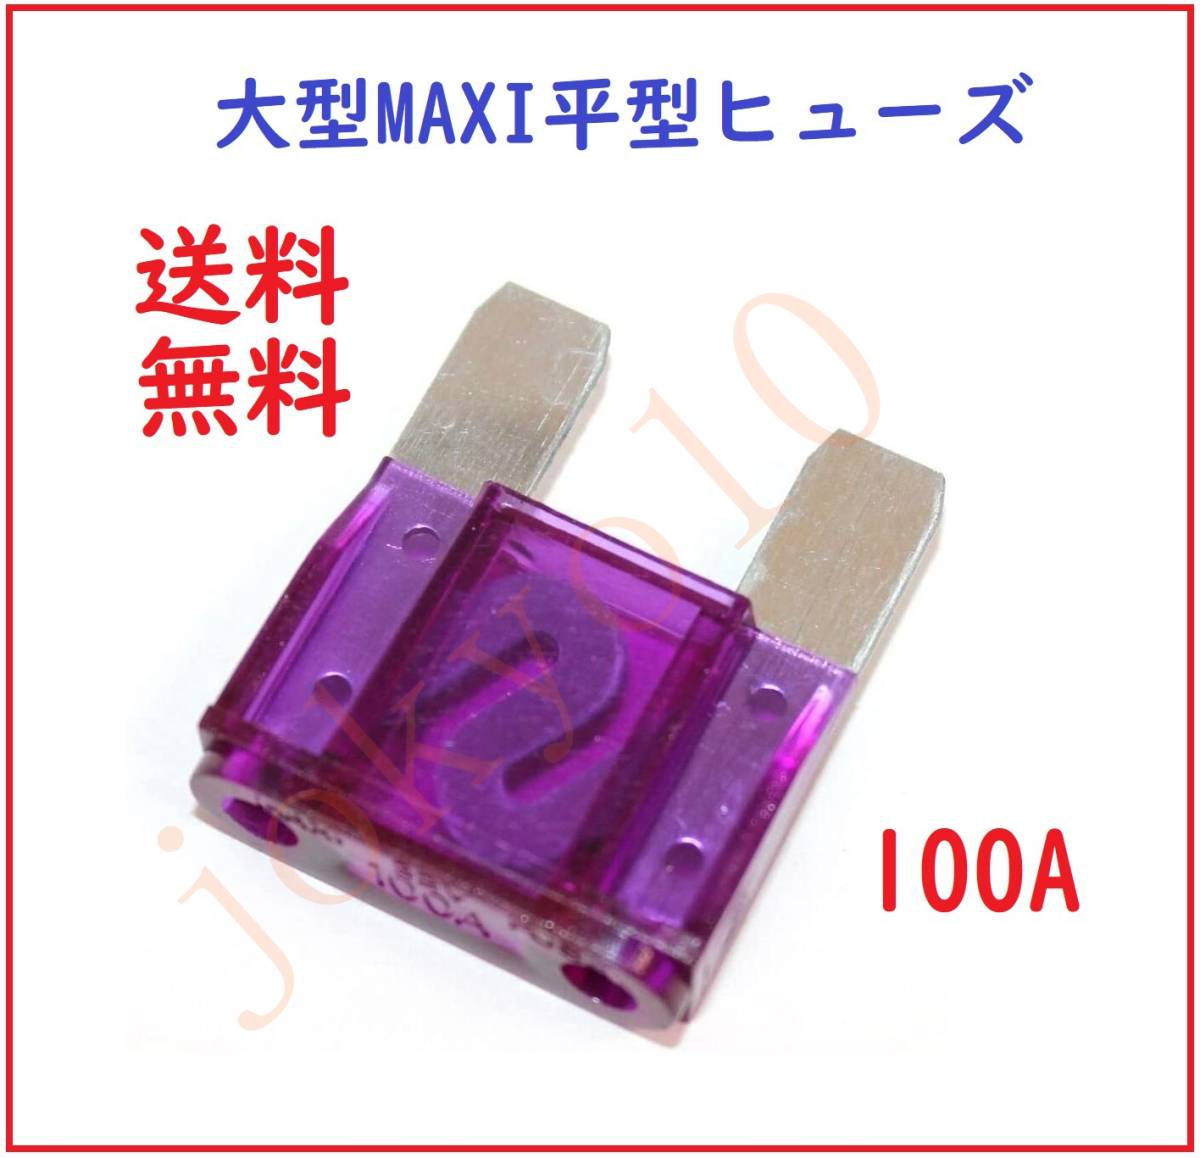 送料無料 紫色 パープル 大型 MAXI 平型ヒューズ 100A 車ブレードヒューズ 32V 大ヒューズ 35 x 29 x 9mm 車両回路保護 DCアプリケーション_画像1